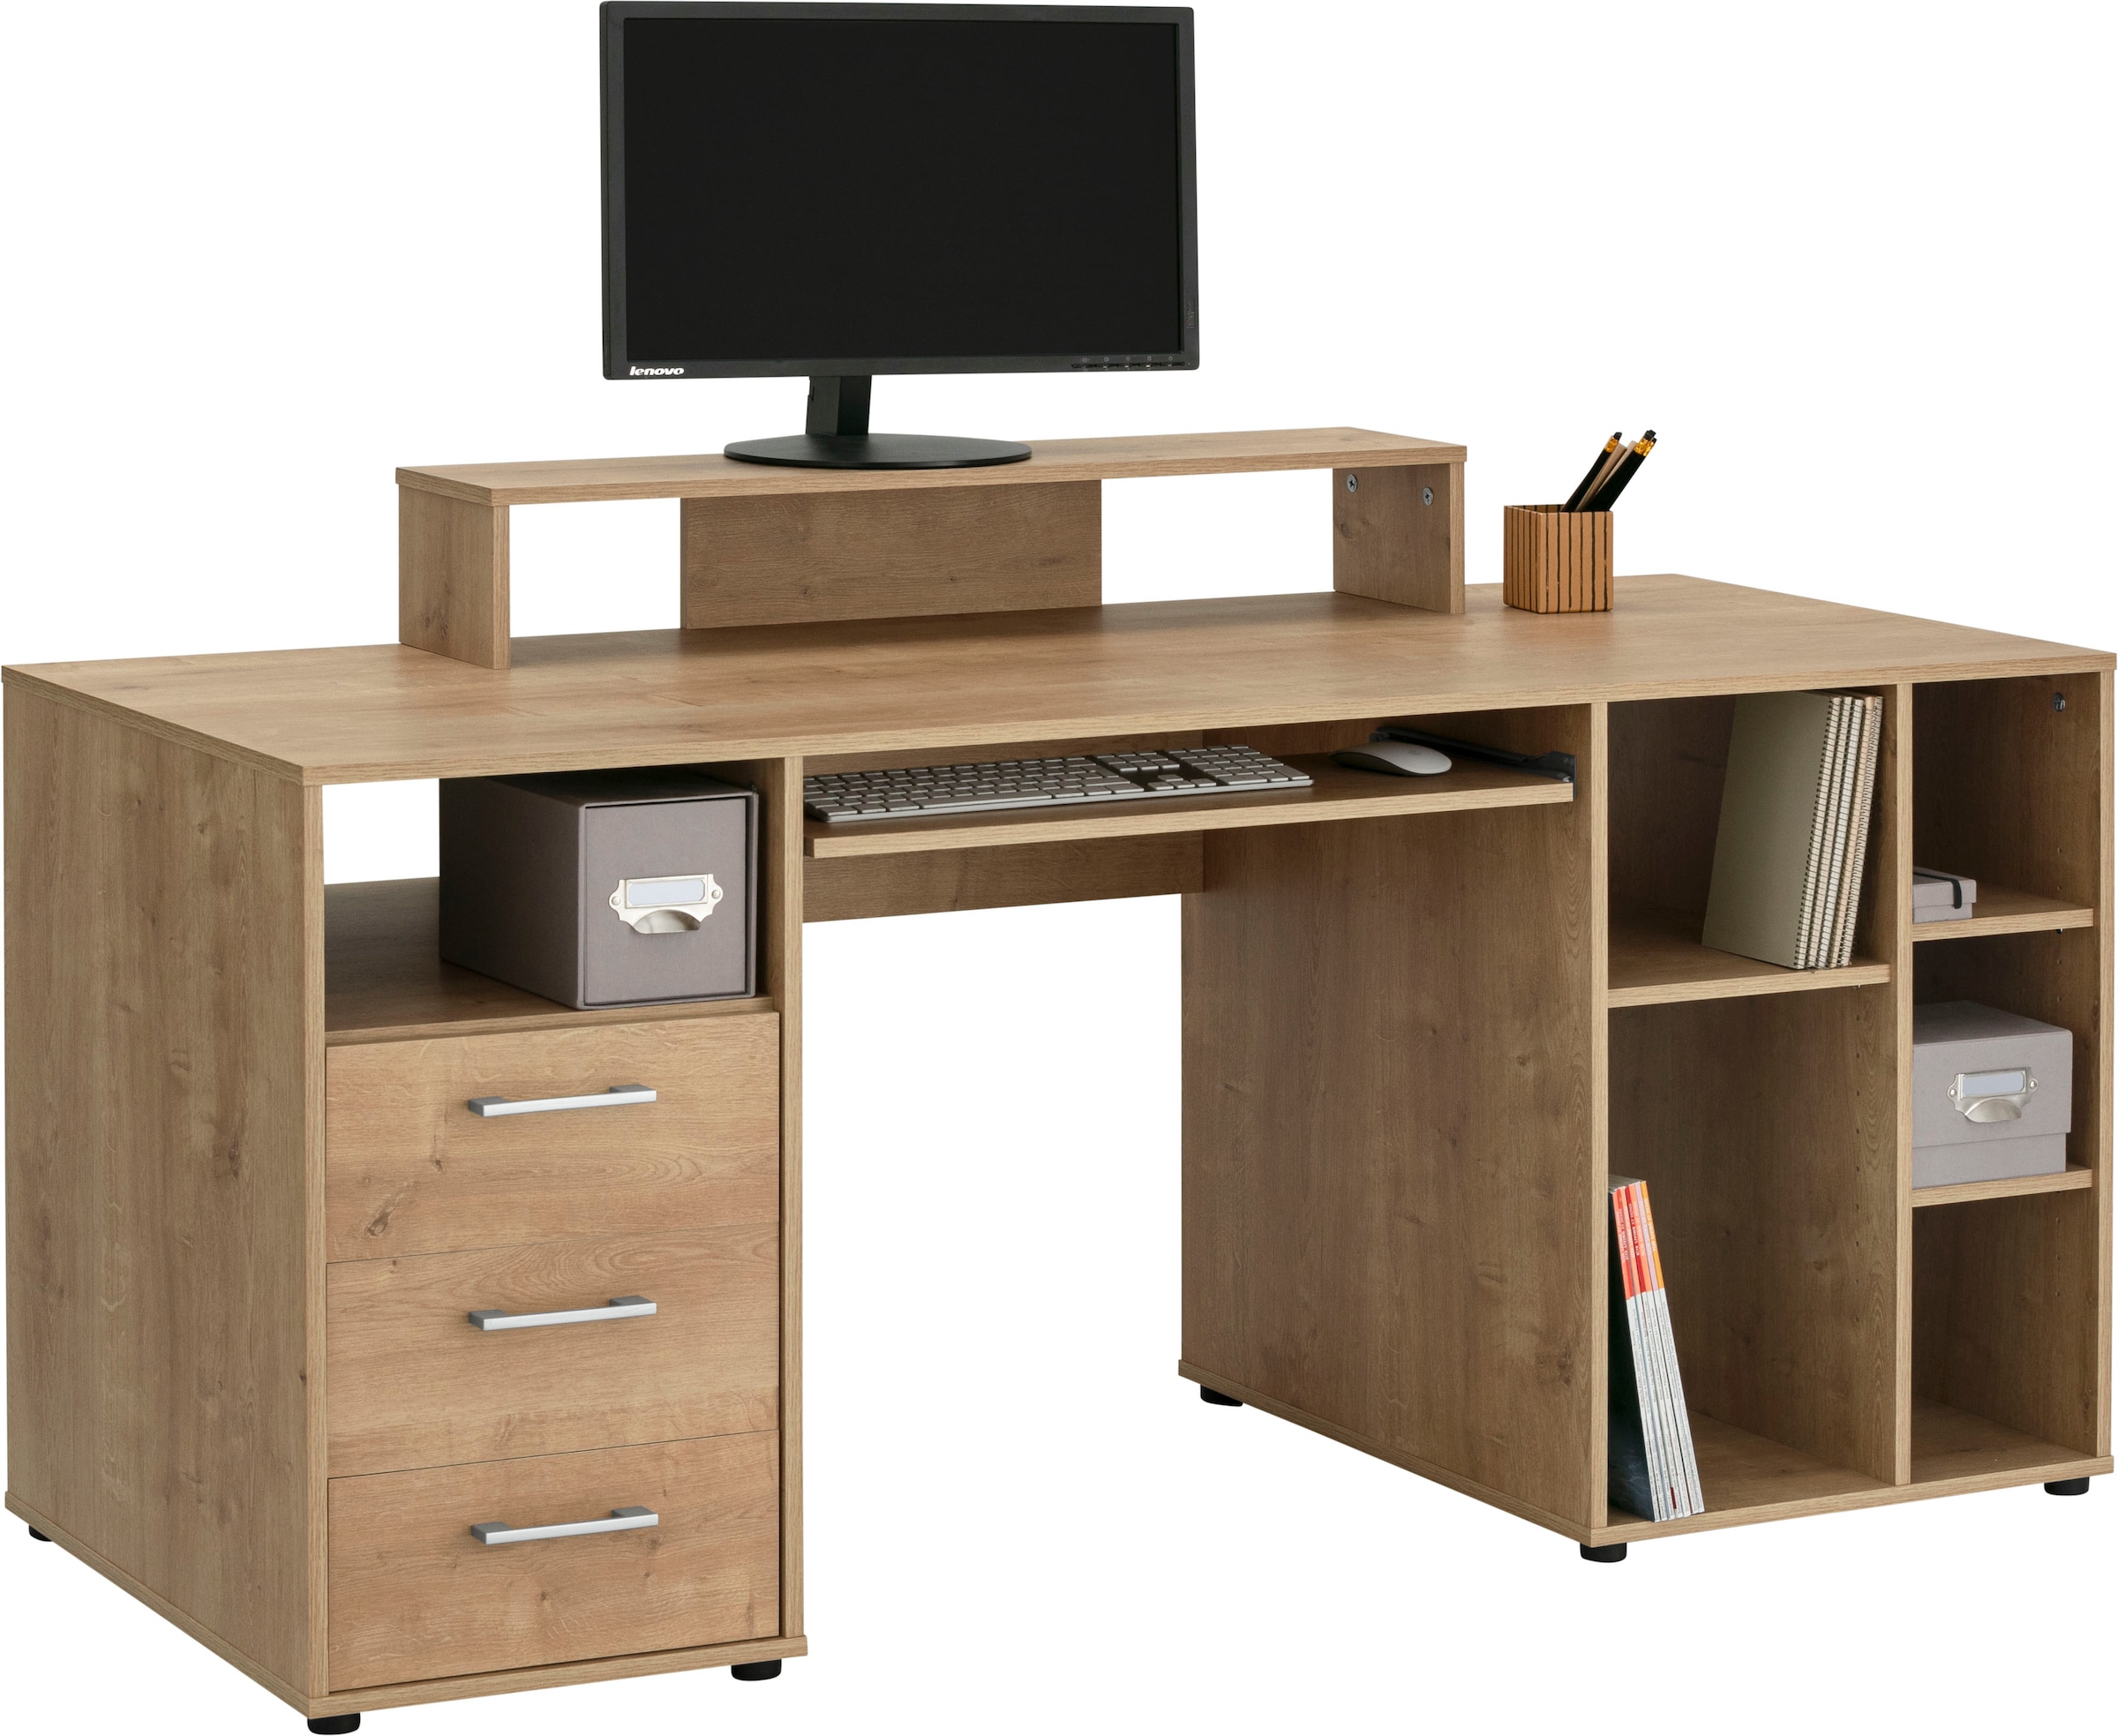 VOGL Möbelfabrik Schreibtisch »Lenny« kaufen bei OTTO